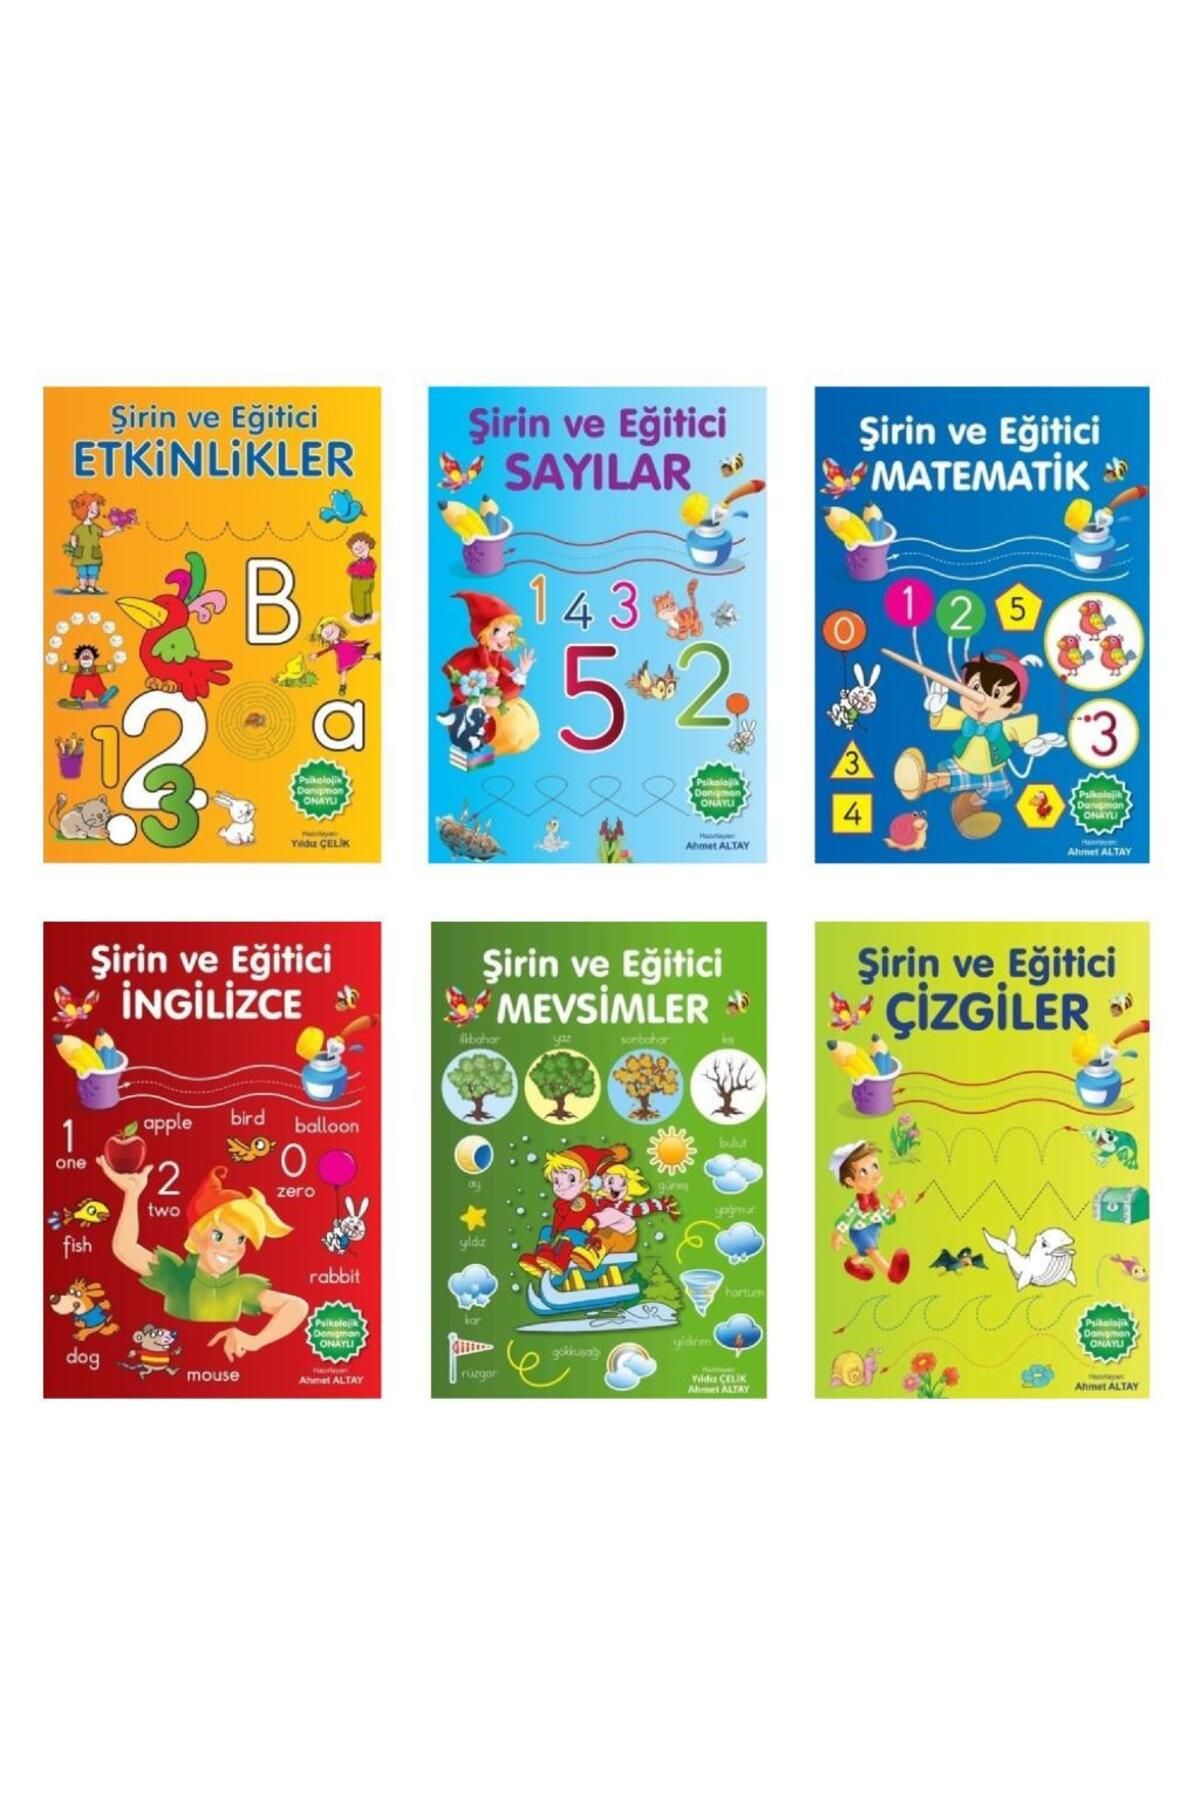 Parıltı Yayınları Şirin ve Eğitici Etkinlikler 6 Kitap (Sayılar + Matematik + Çizgiler + Mevsimler + İngilizce + Etkin